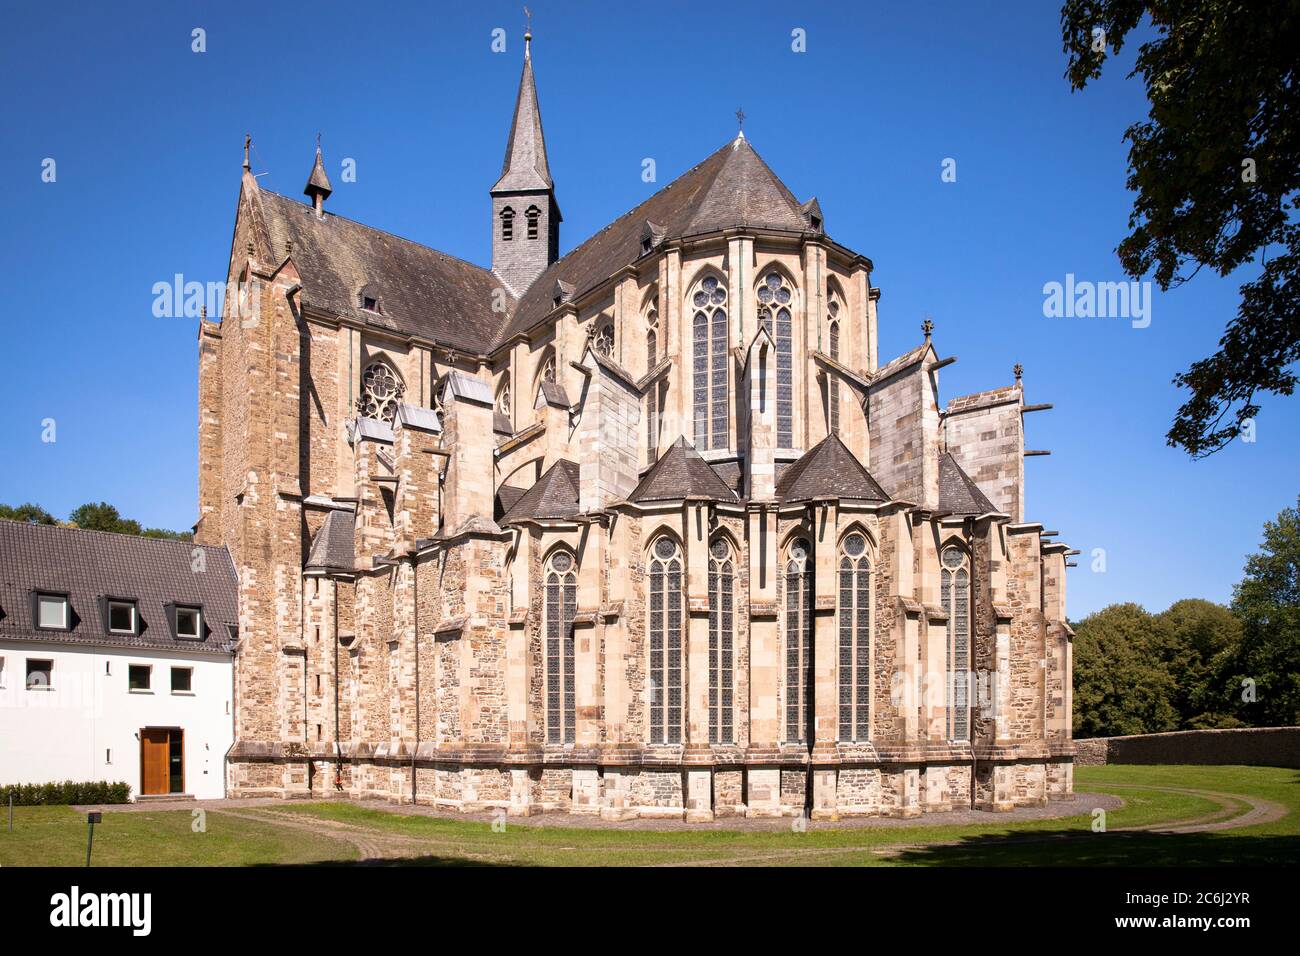 La cattedrale di Altenberg a Odenthal, la chiesa dell'ex abbazia cistercense Altenberg, la regione del Bergisches Land, Nord Reno-Westfalia, Germania. De Foto Stock